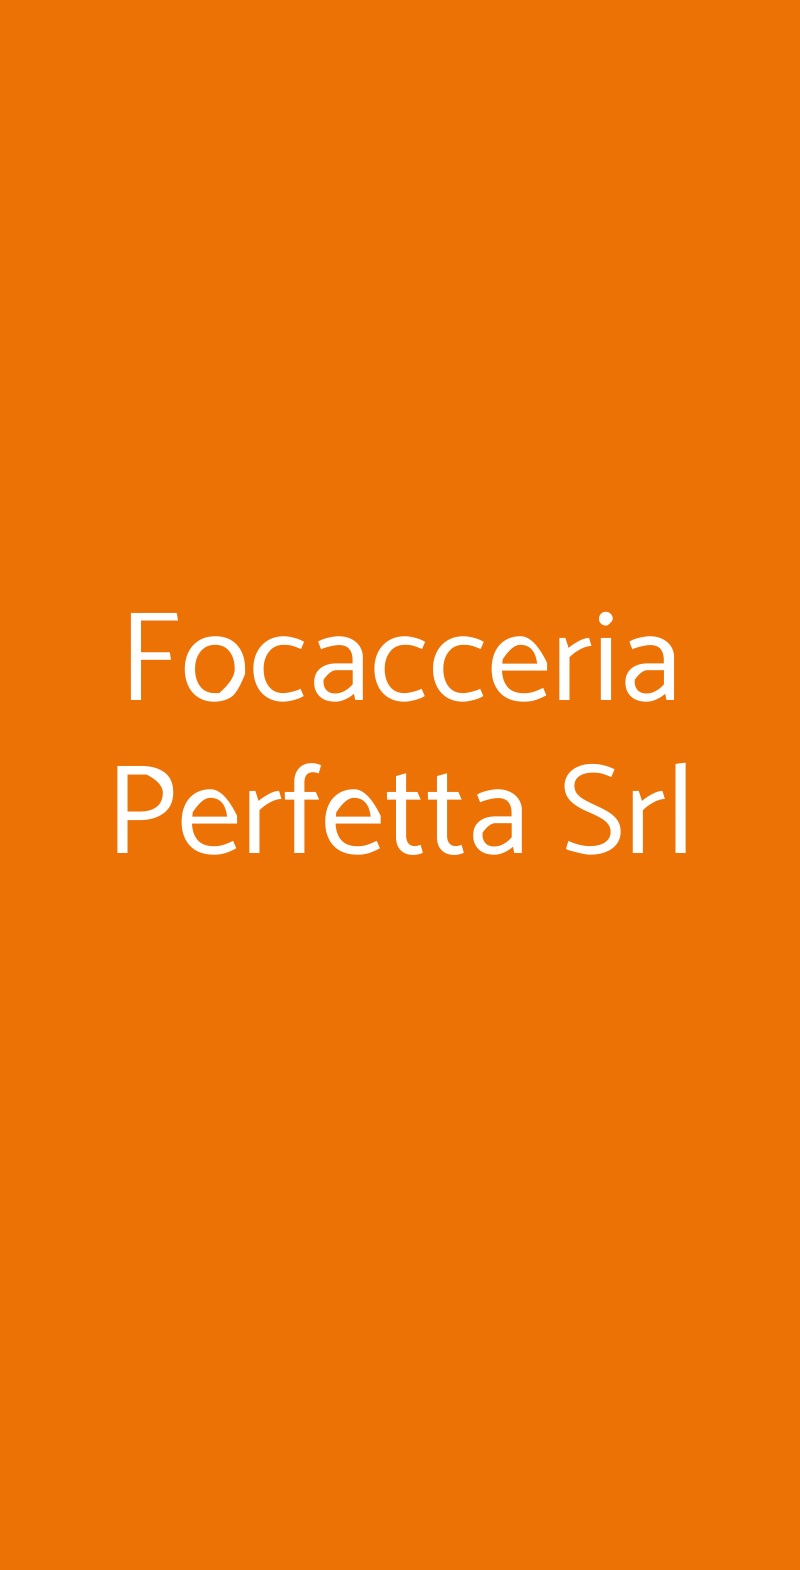 Focacceria Perfetta Srl Firenze menù 1 pagina